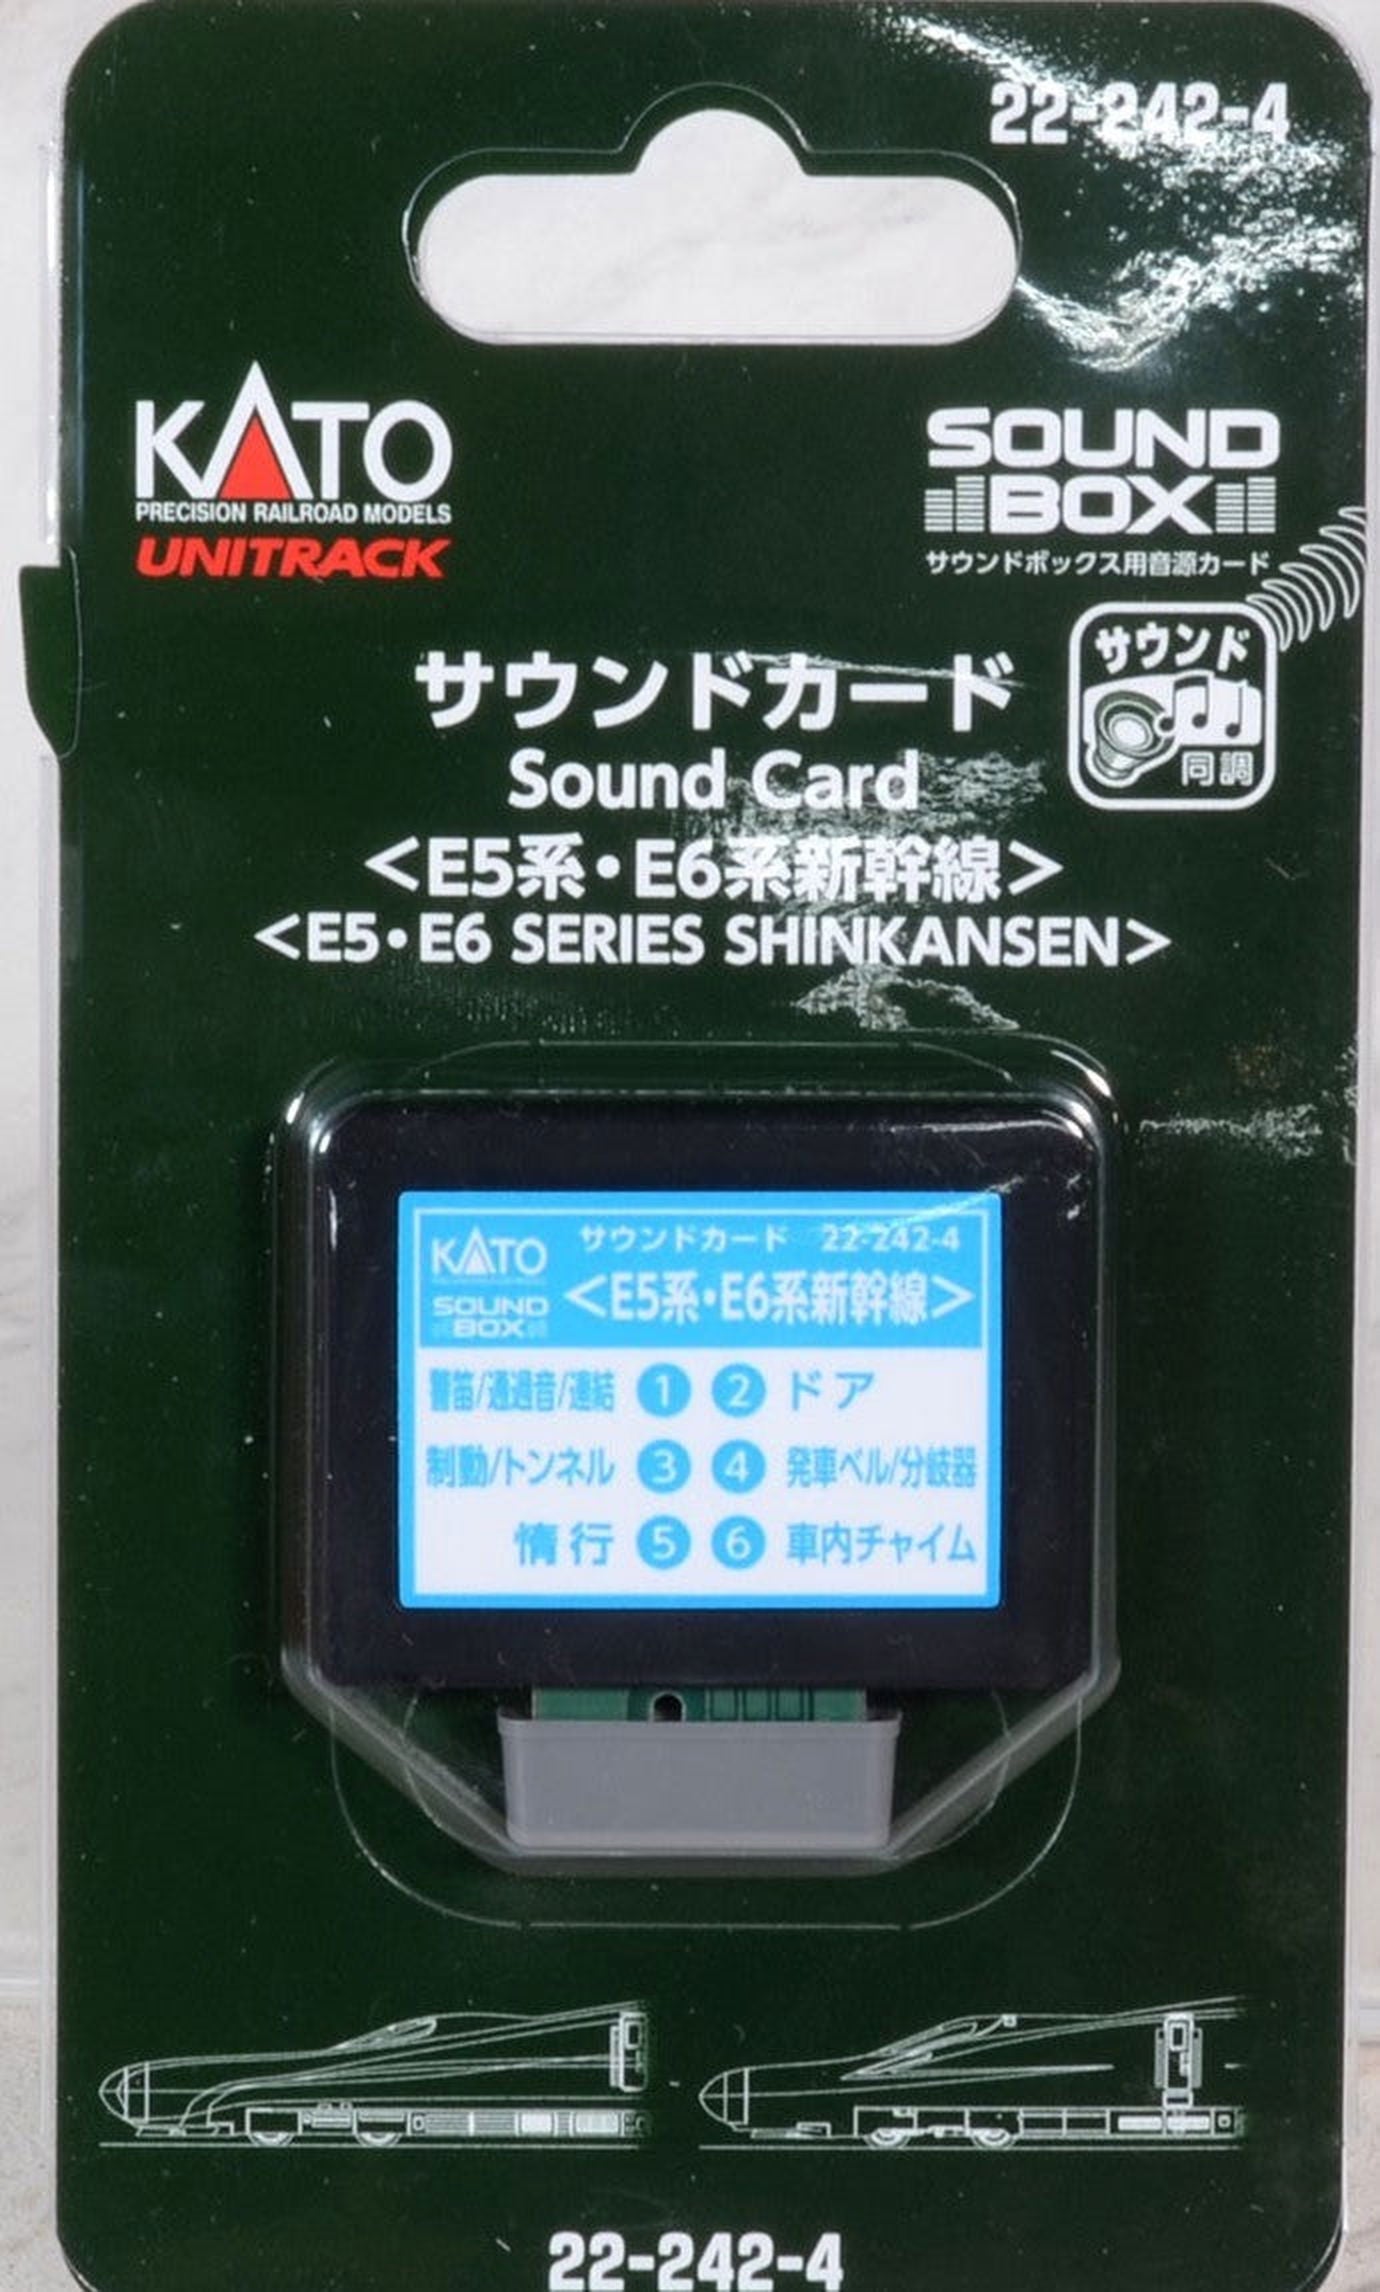 KATO 22-242-4 Unitrack Sound Card `Series E5, E6 Shink - BanzaiHobby